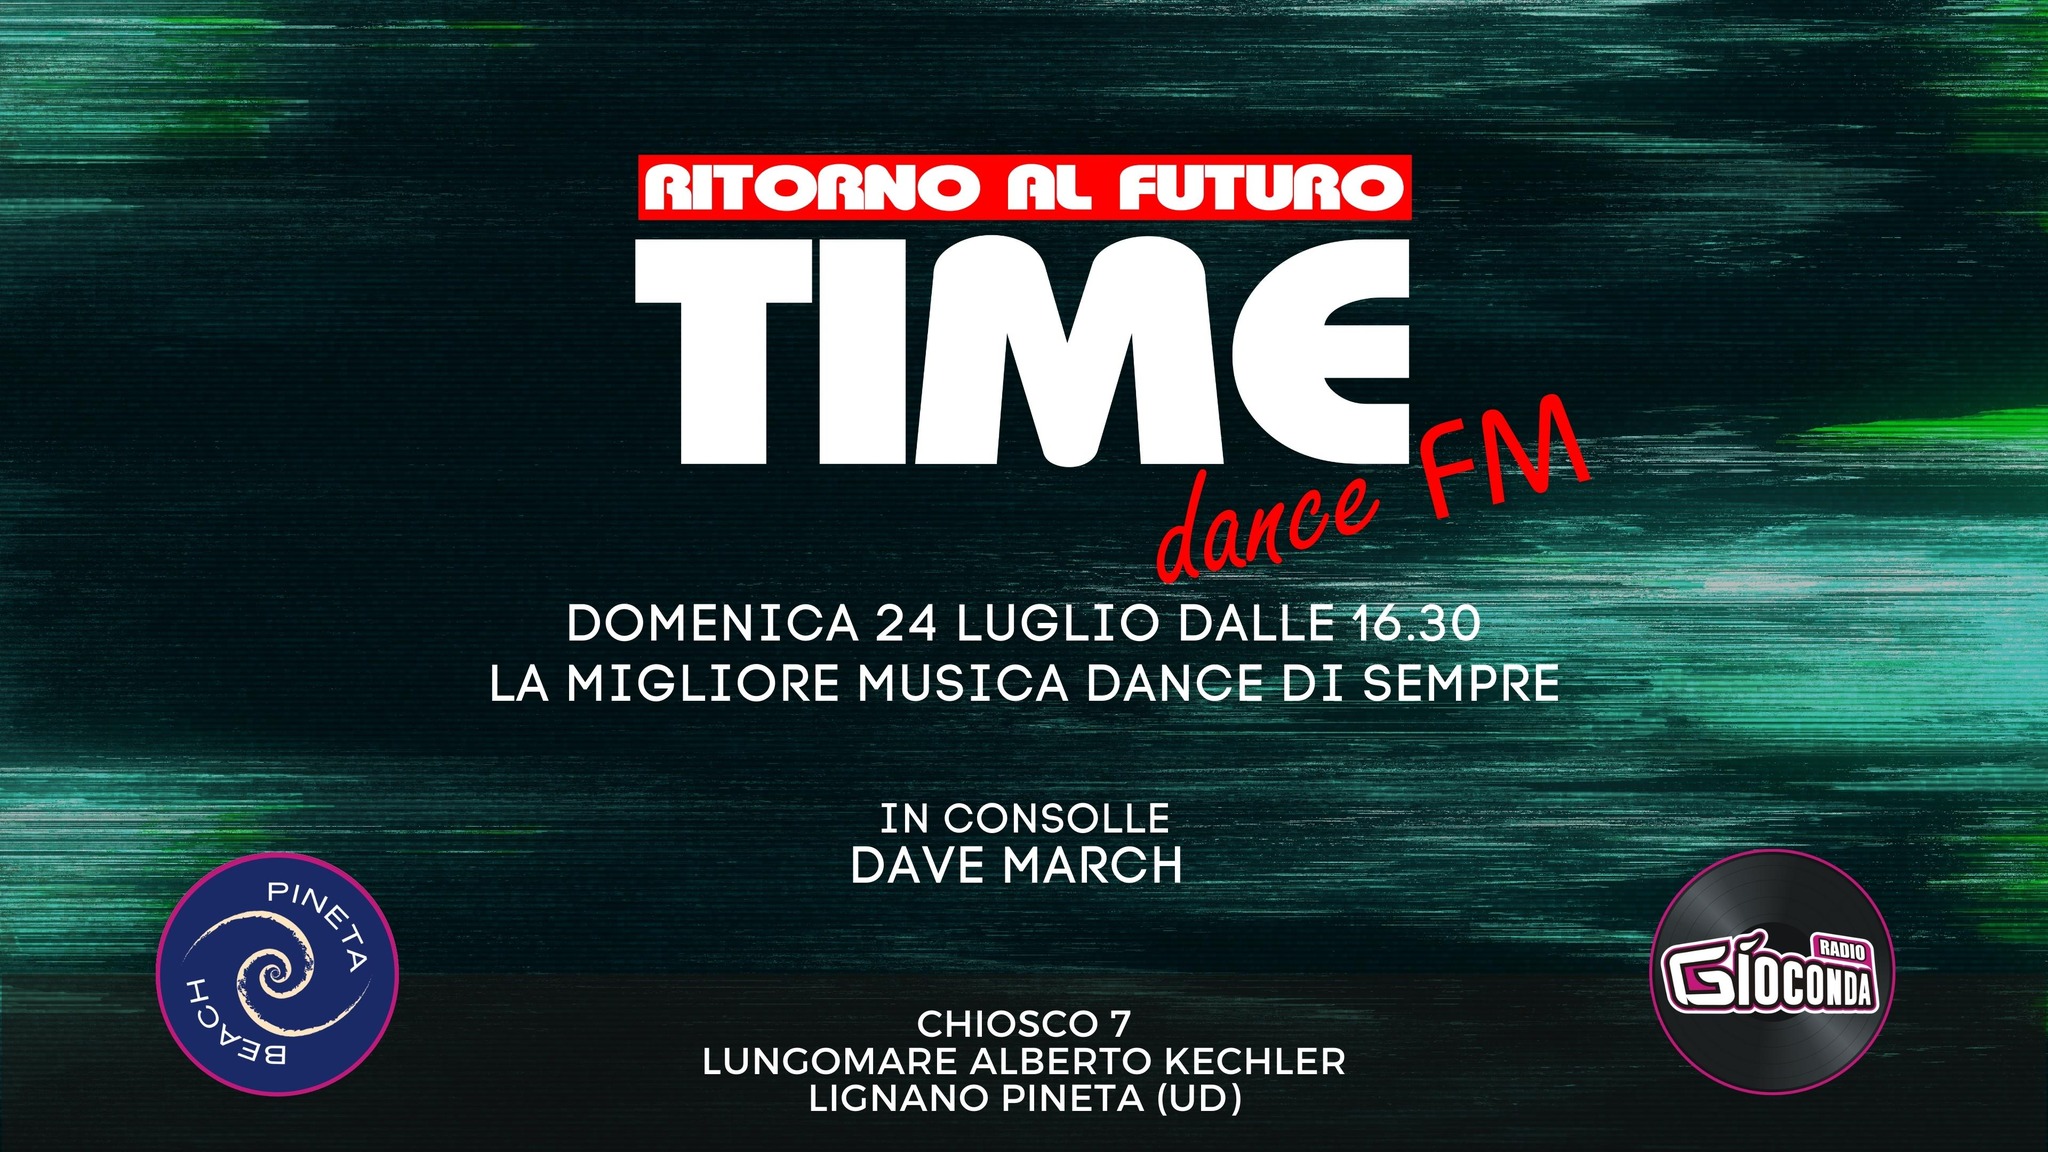 Time dance fm – Ritorno al Futuro, Chiosco 7, Lignano Pineta